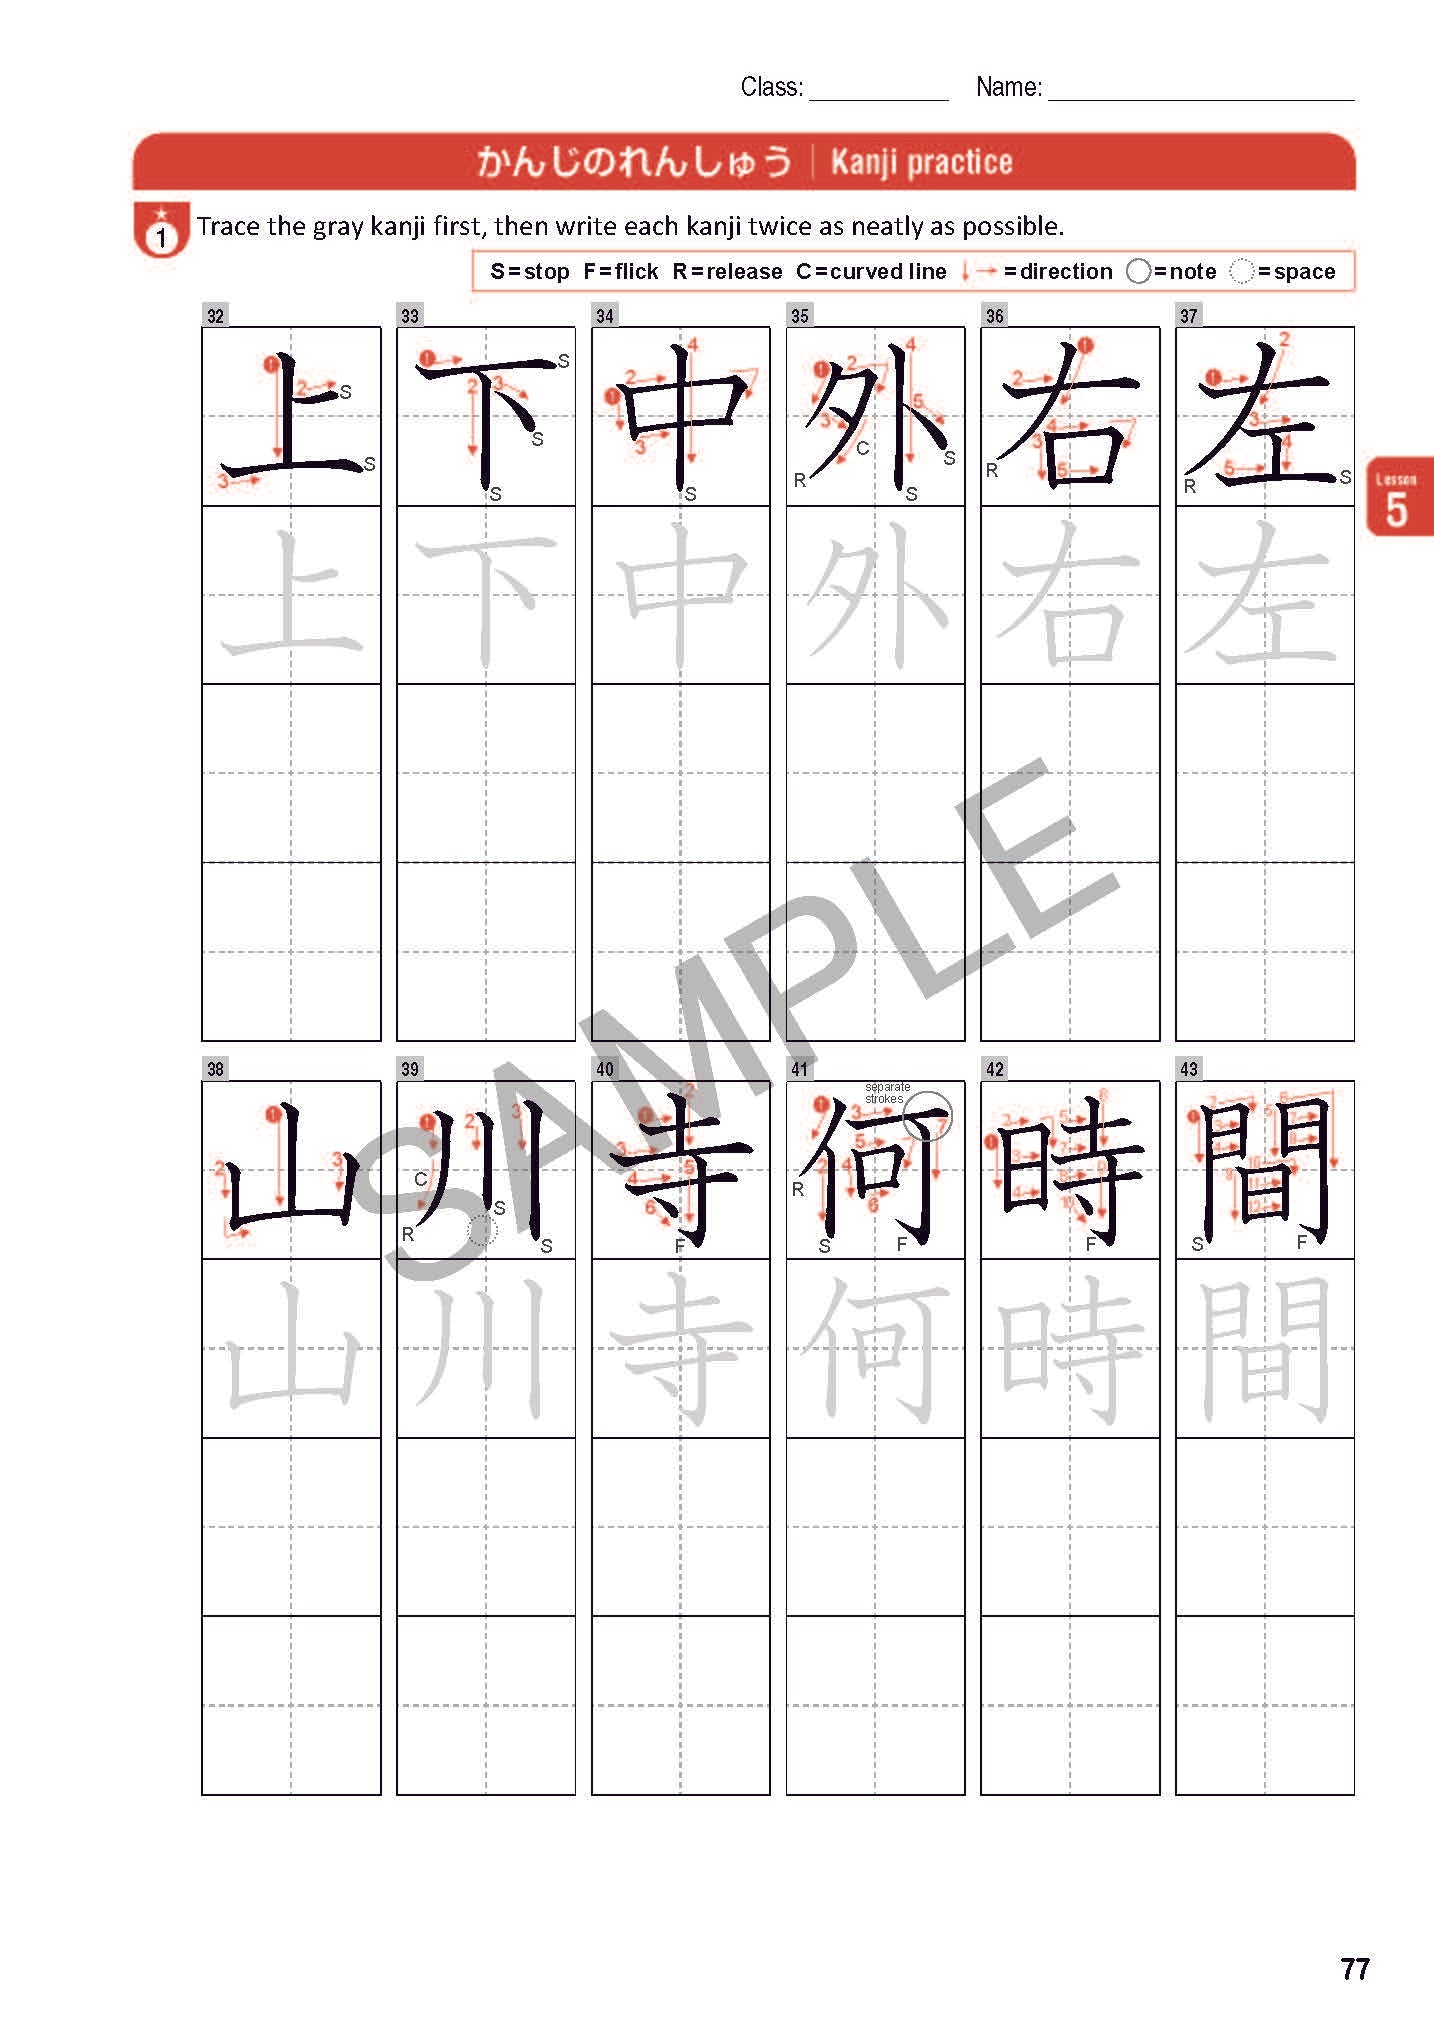 TOBIRA I: Beginning Japanese Workbook 1 -Hiragana/Katakana, Kanji, Reading, Writing